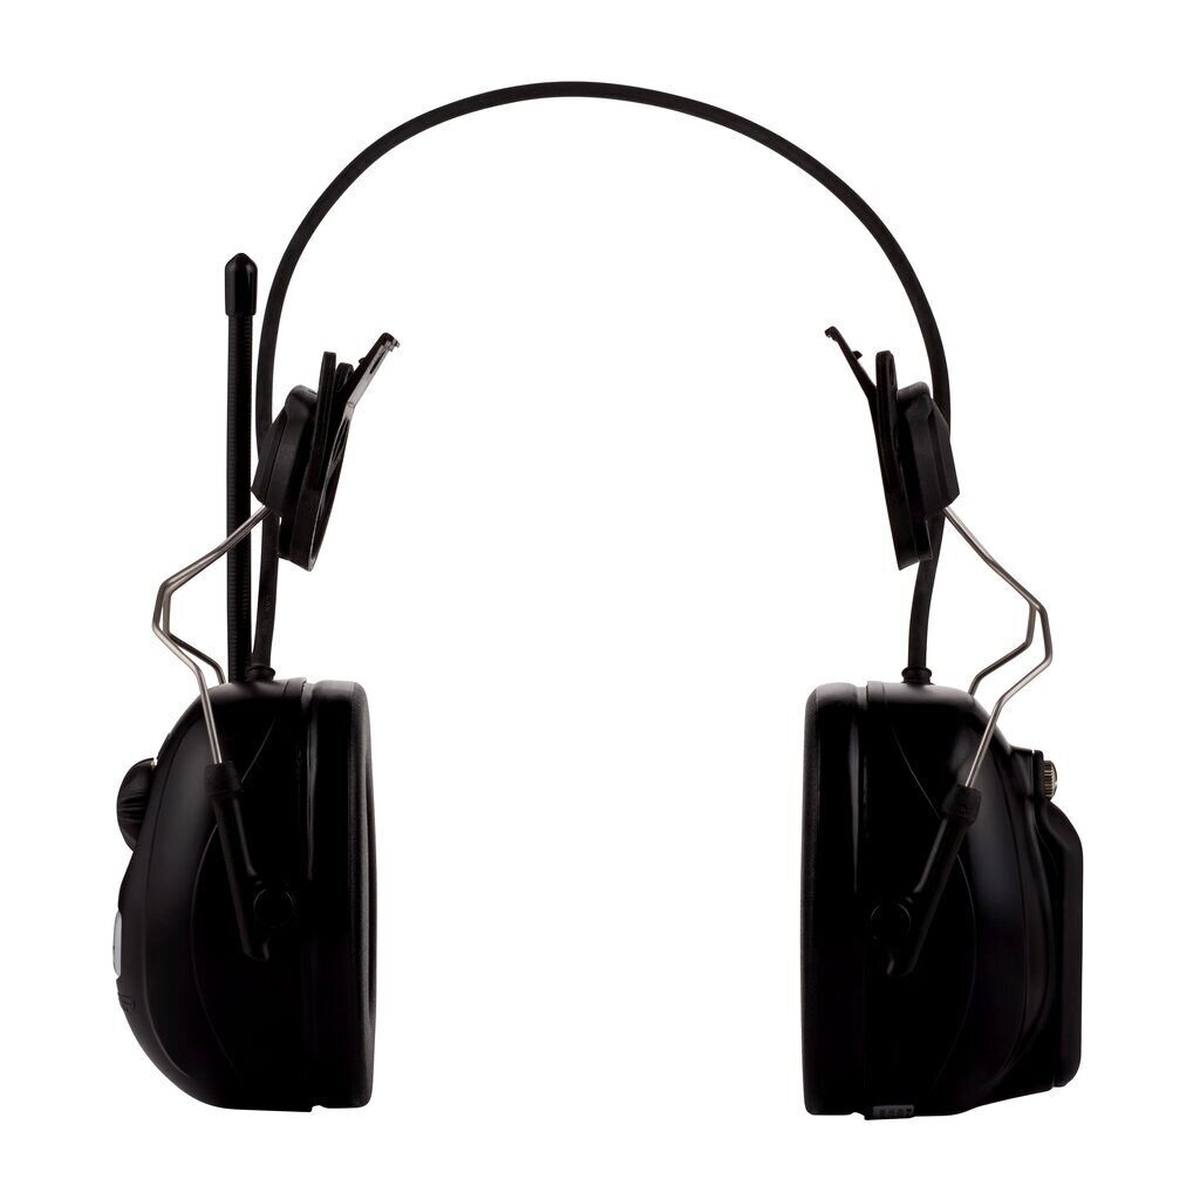 3M Peltor Radio DAB FM, black, helmet version, SNR = 30 dB